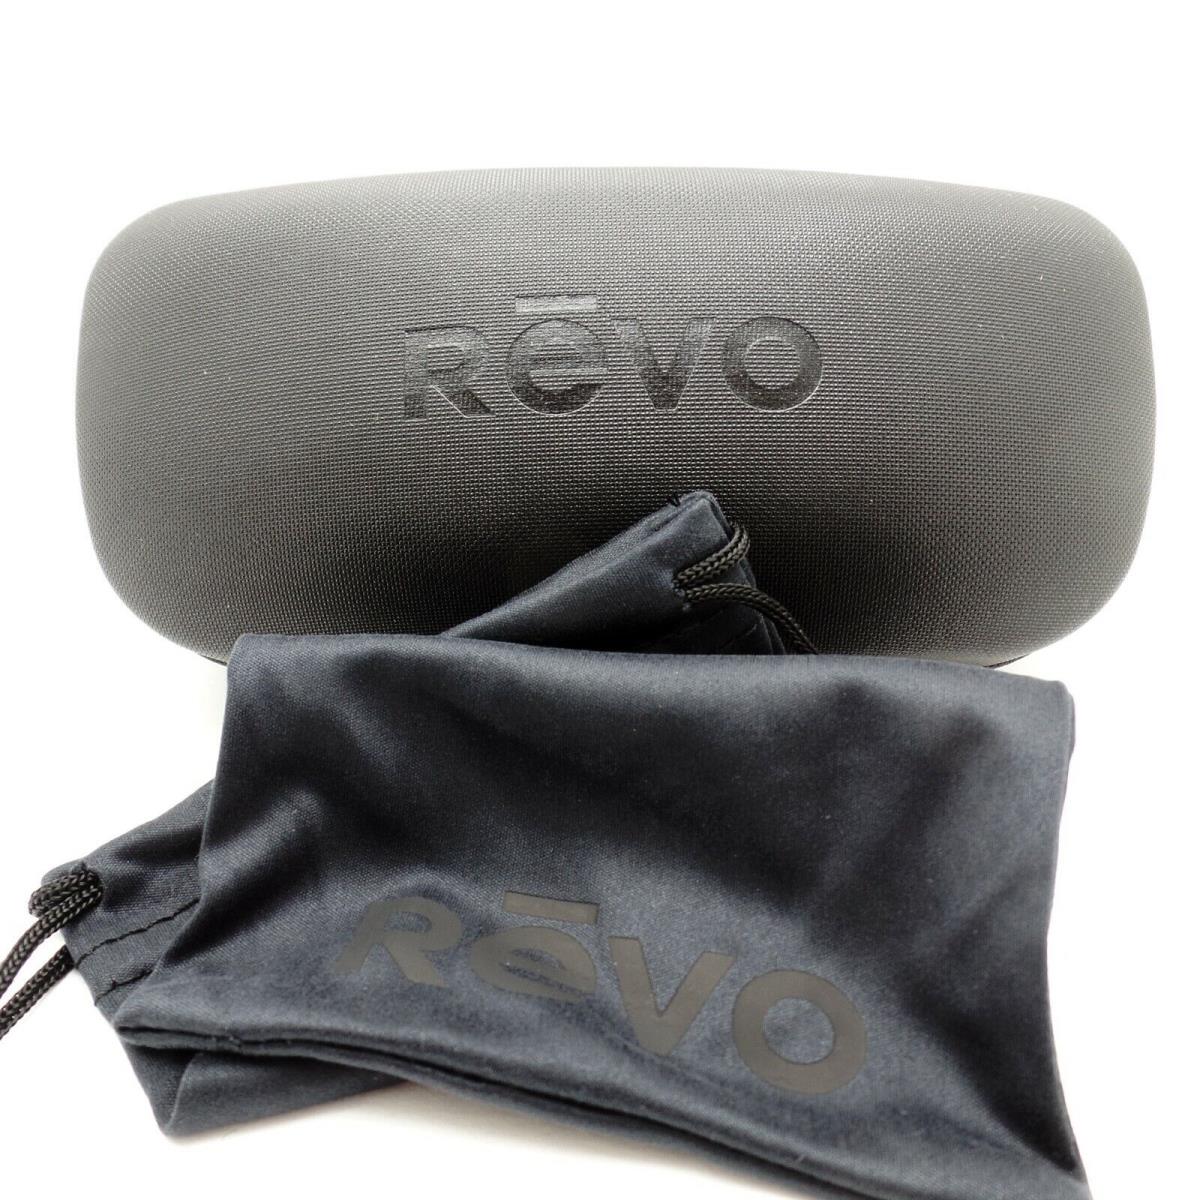 Revo sunglasses Dexter - Black Matte Frame, Blue Water Lens